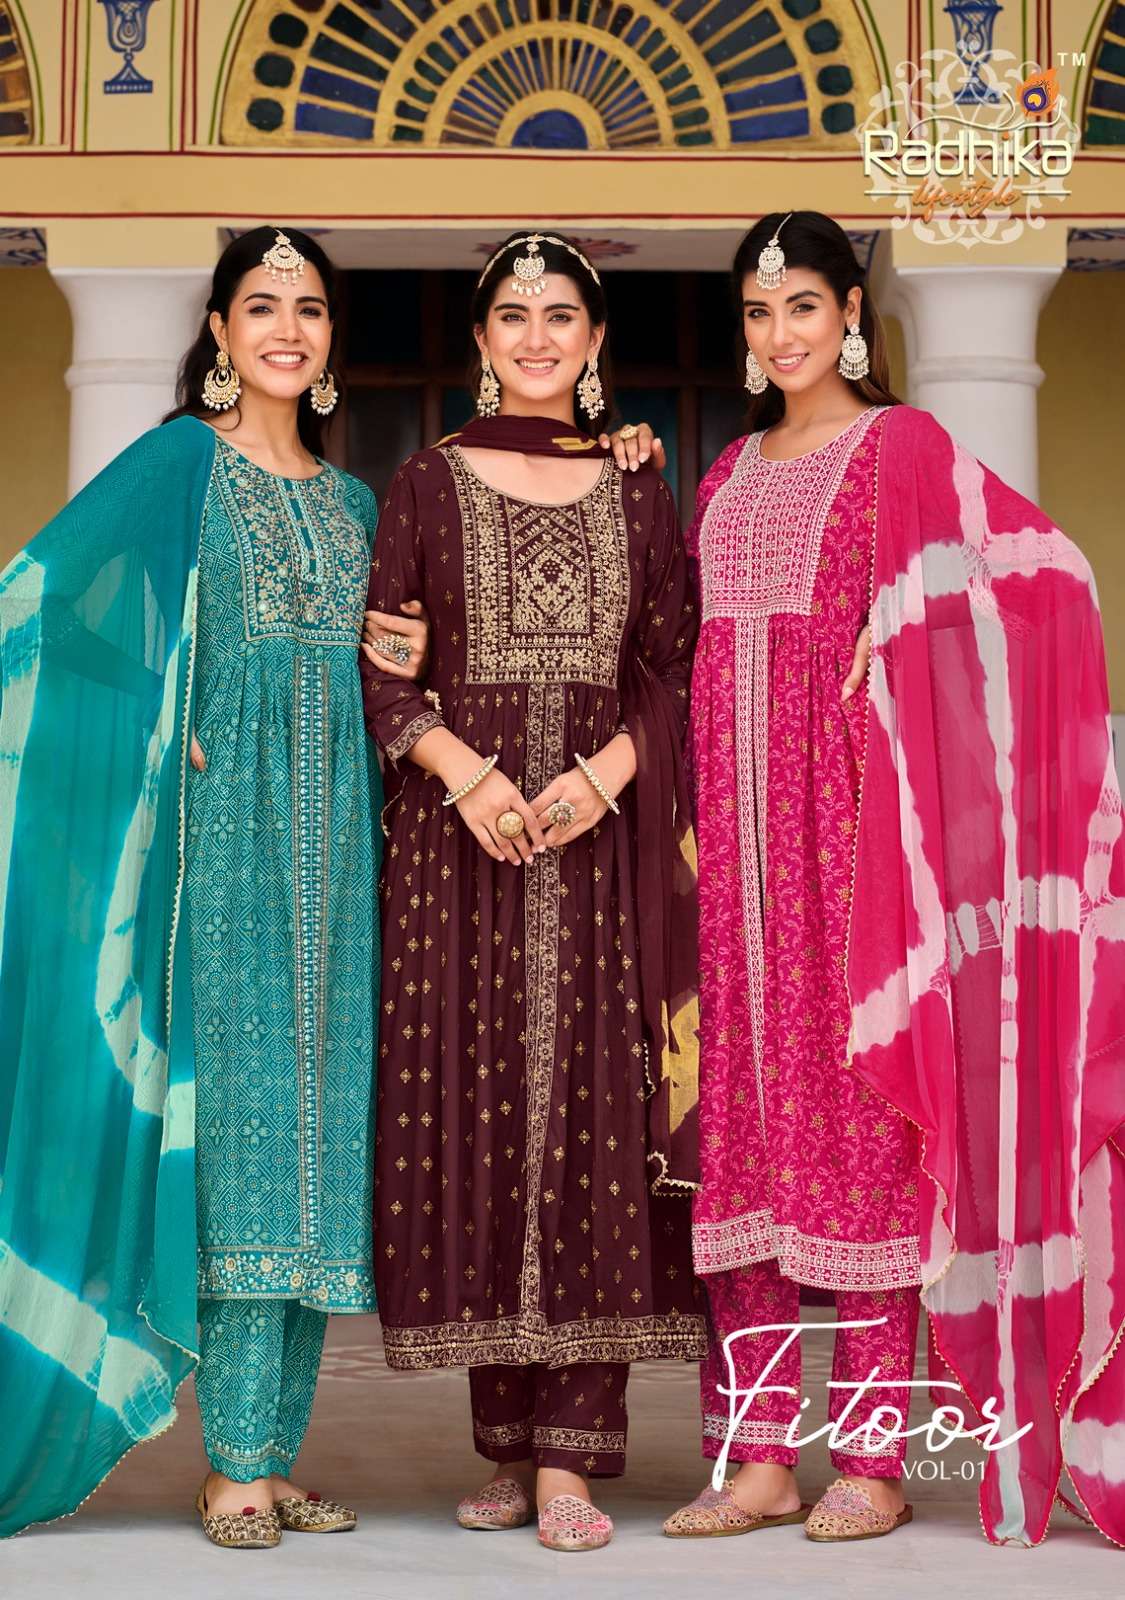 radhika fitoor vol-1 1001-1007 series designer nayra cut wedding wear kurti set wholesaler surat